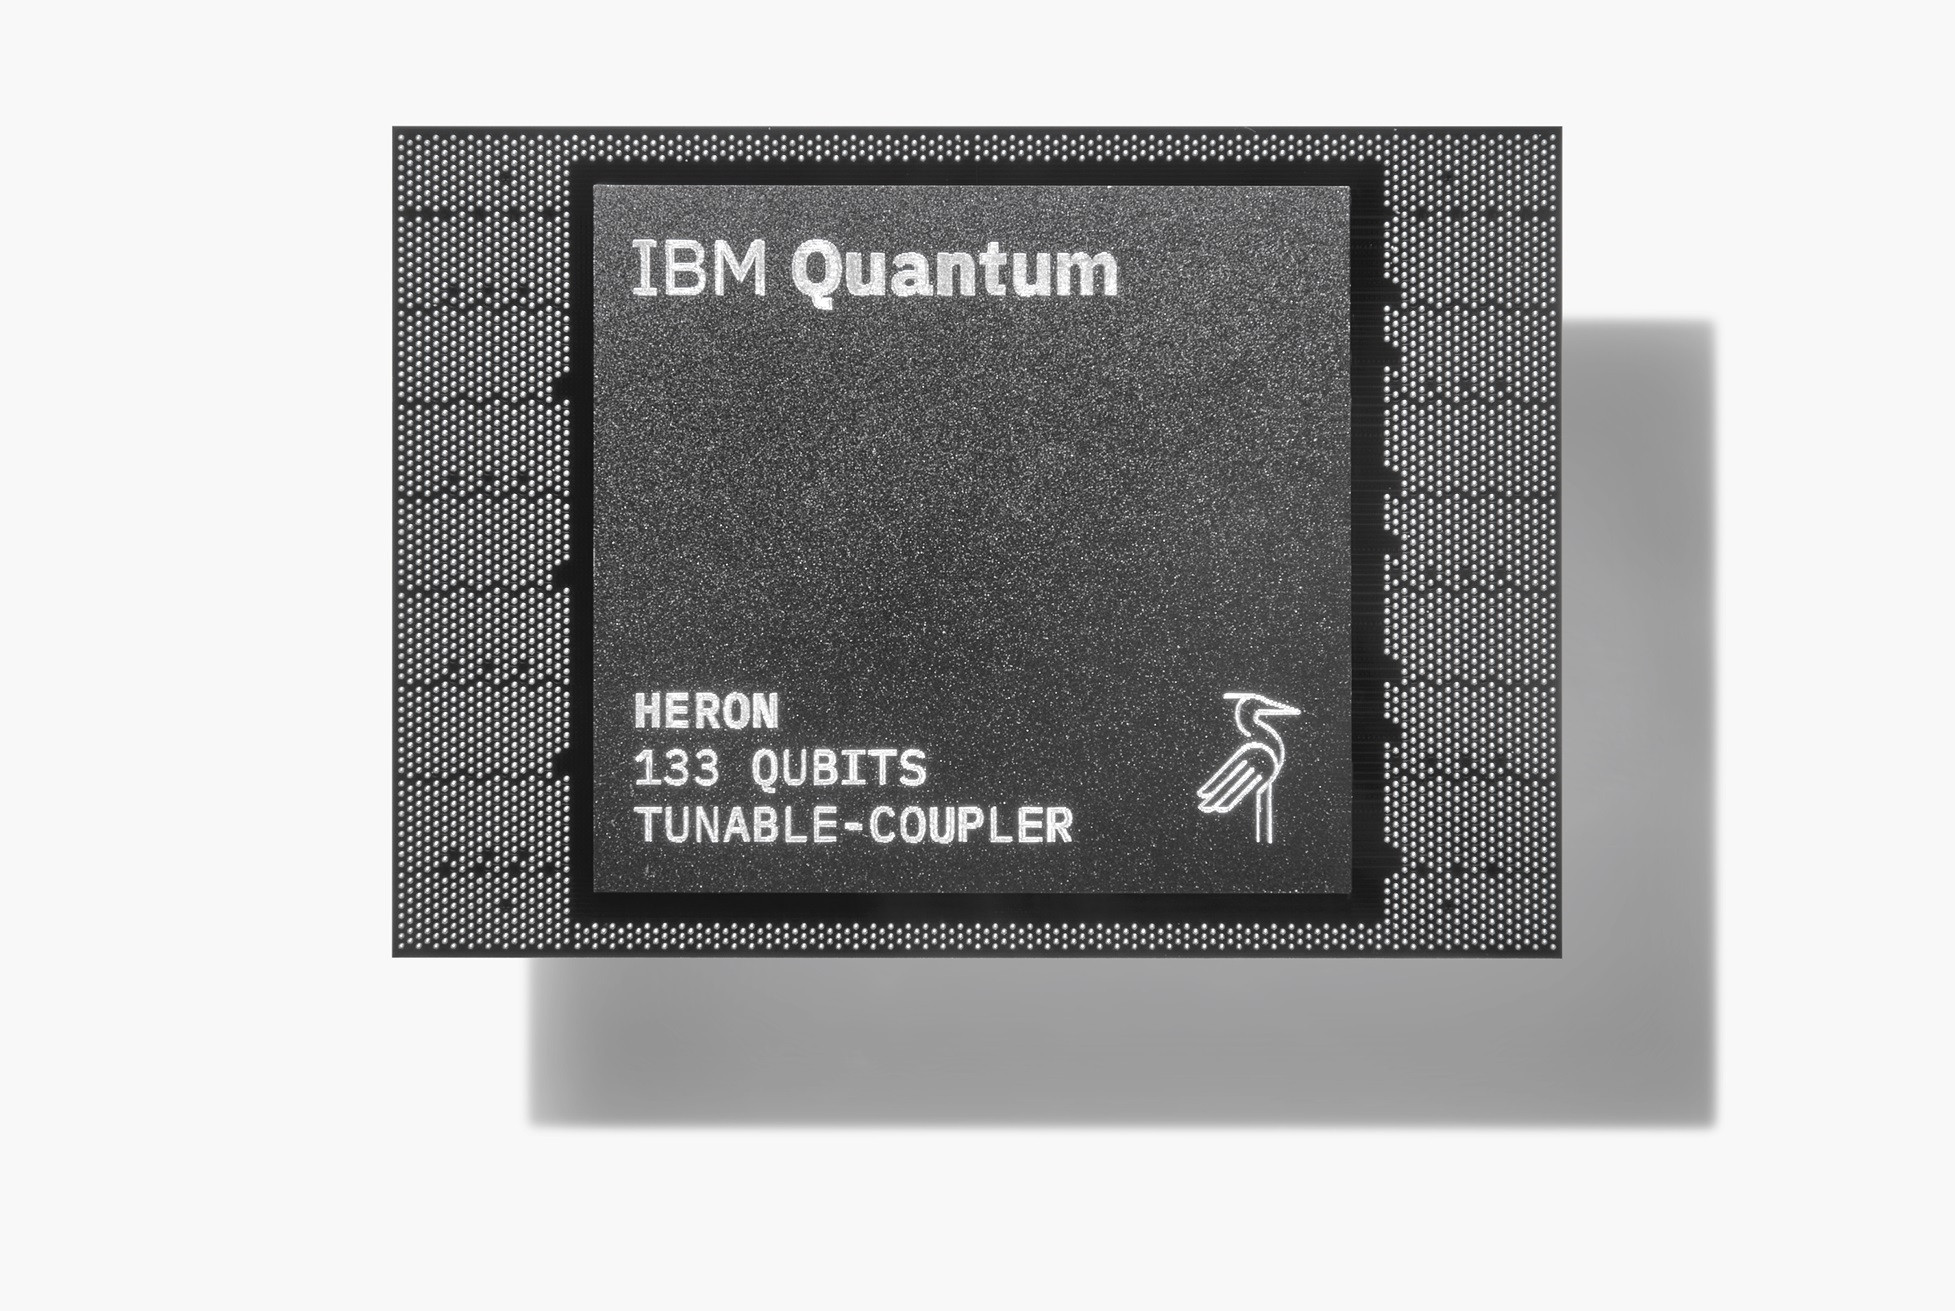 IBM Quantum Heron